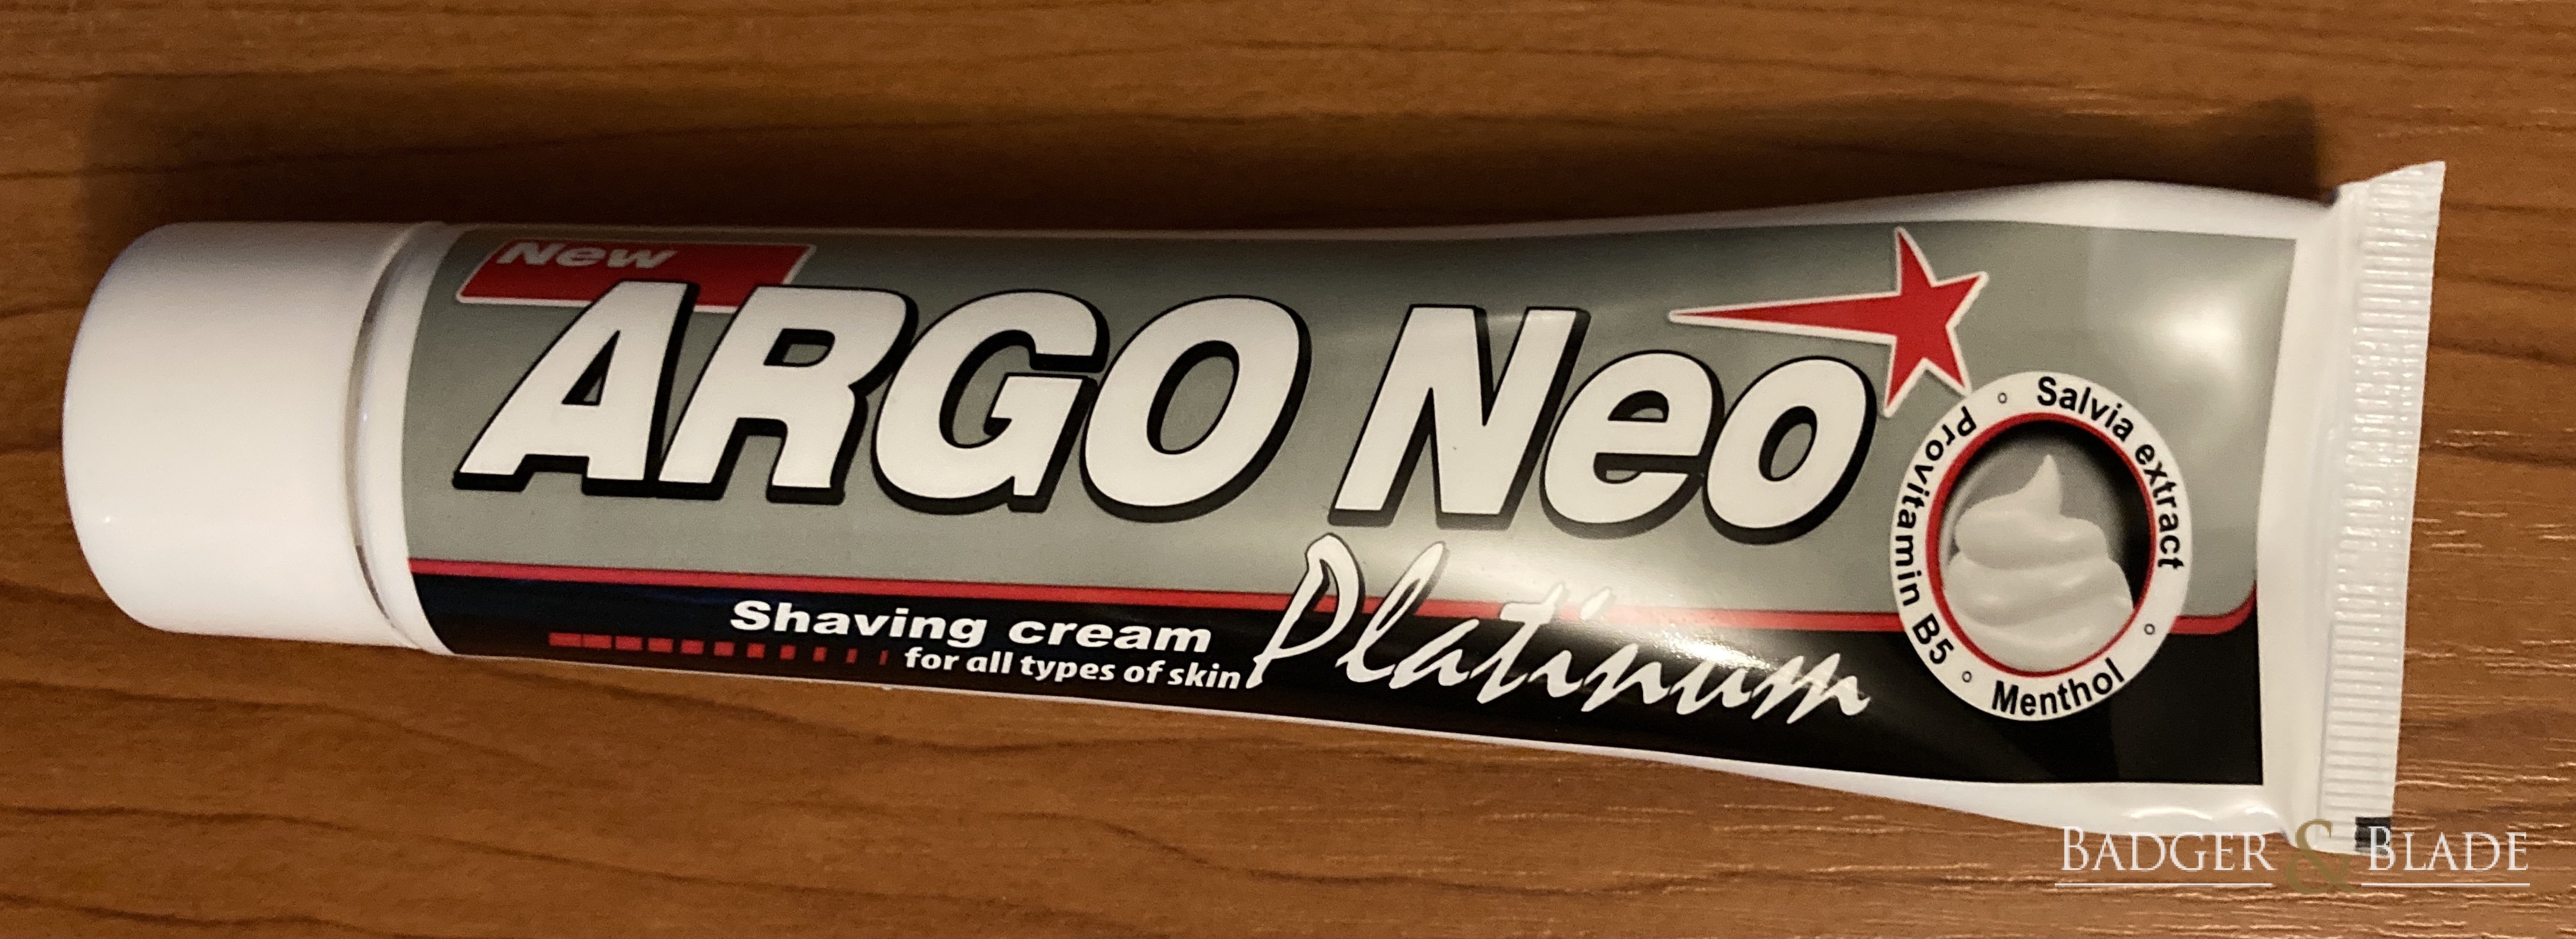 Argo Neo Platinum shaving cream